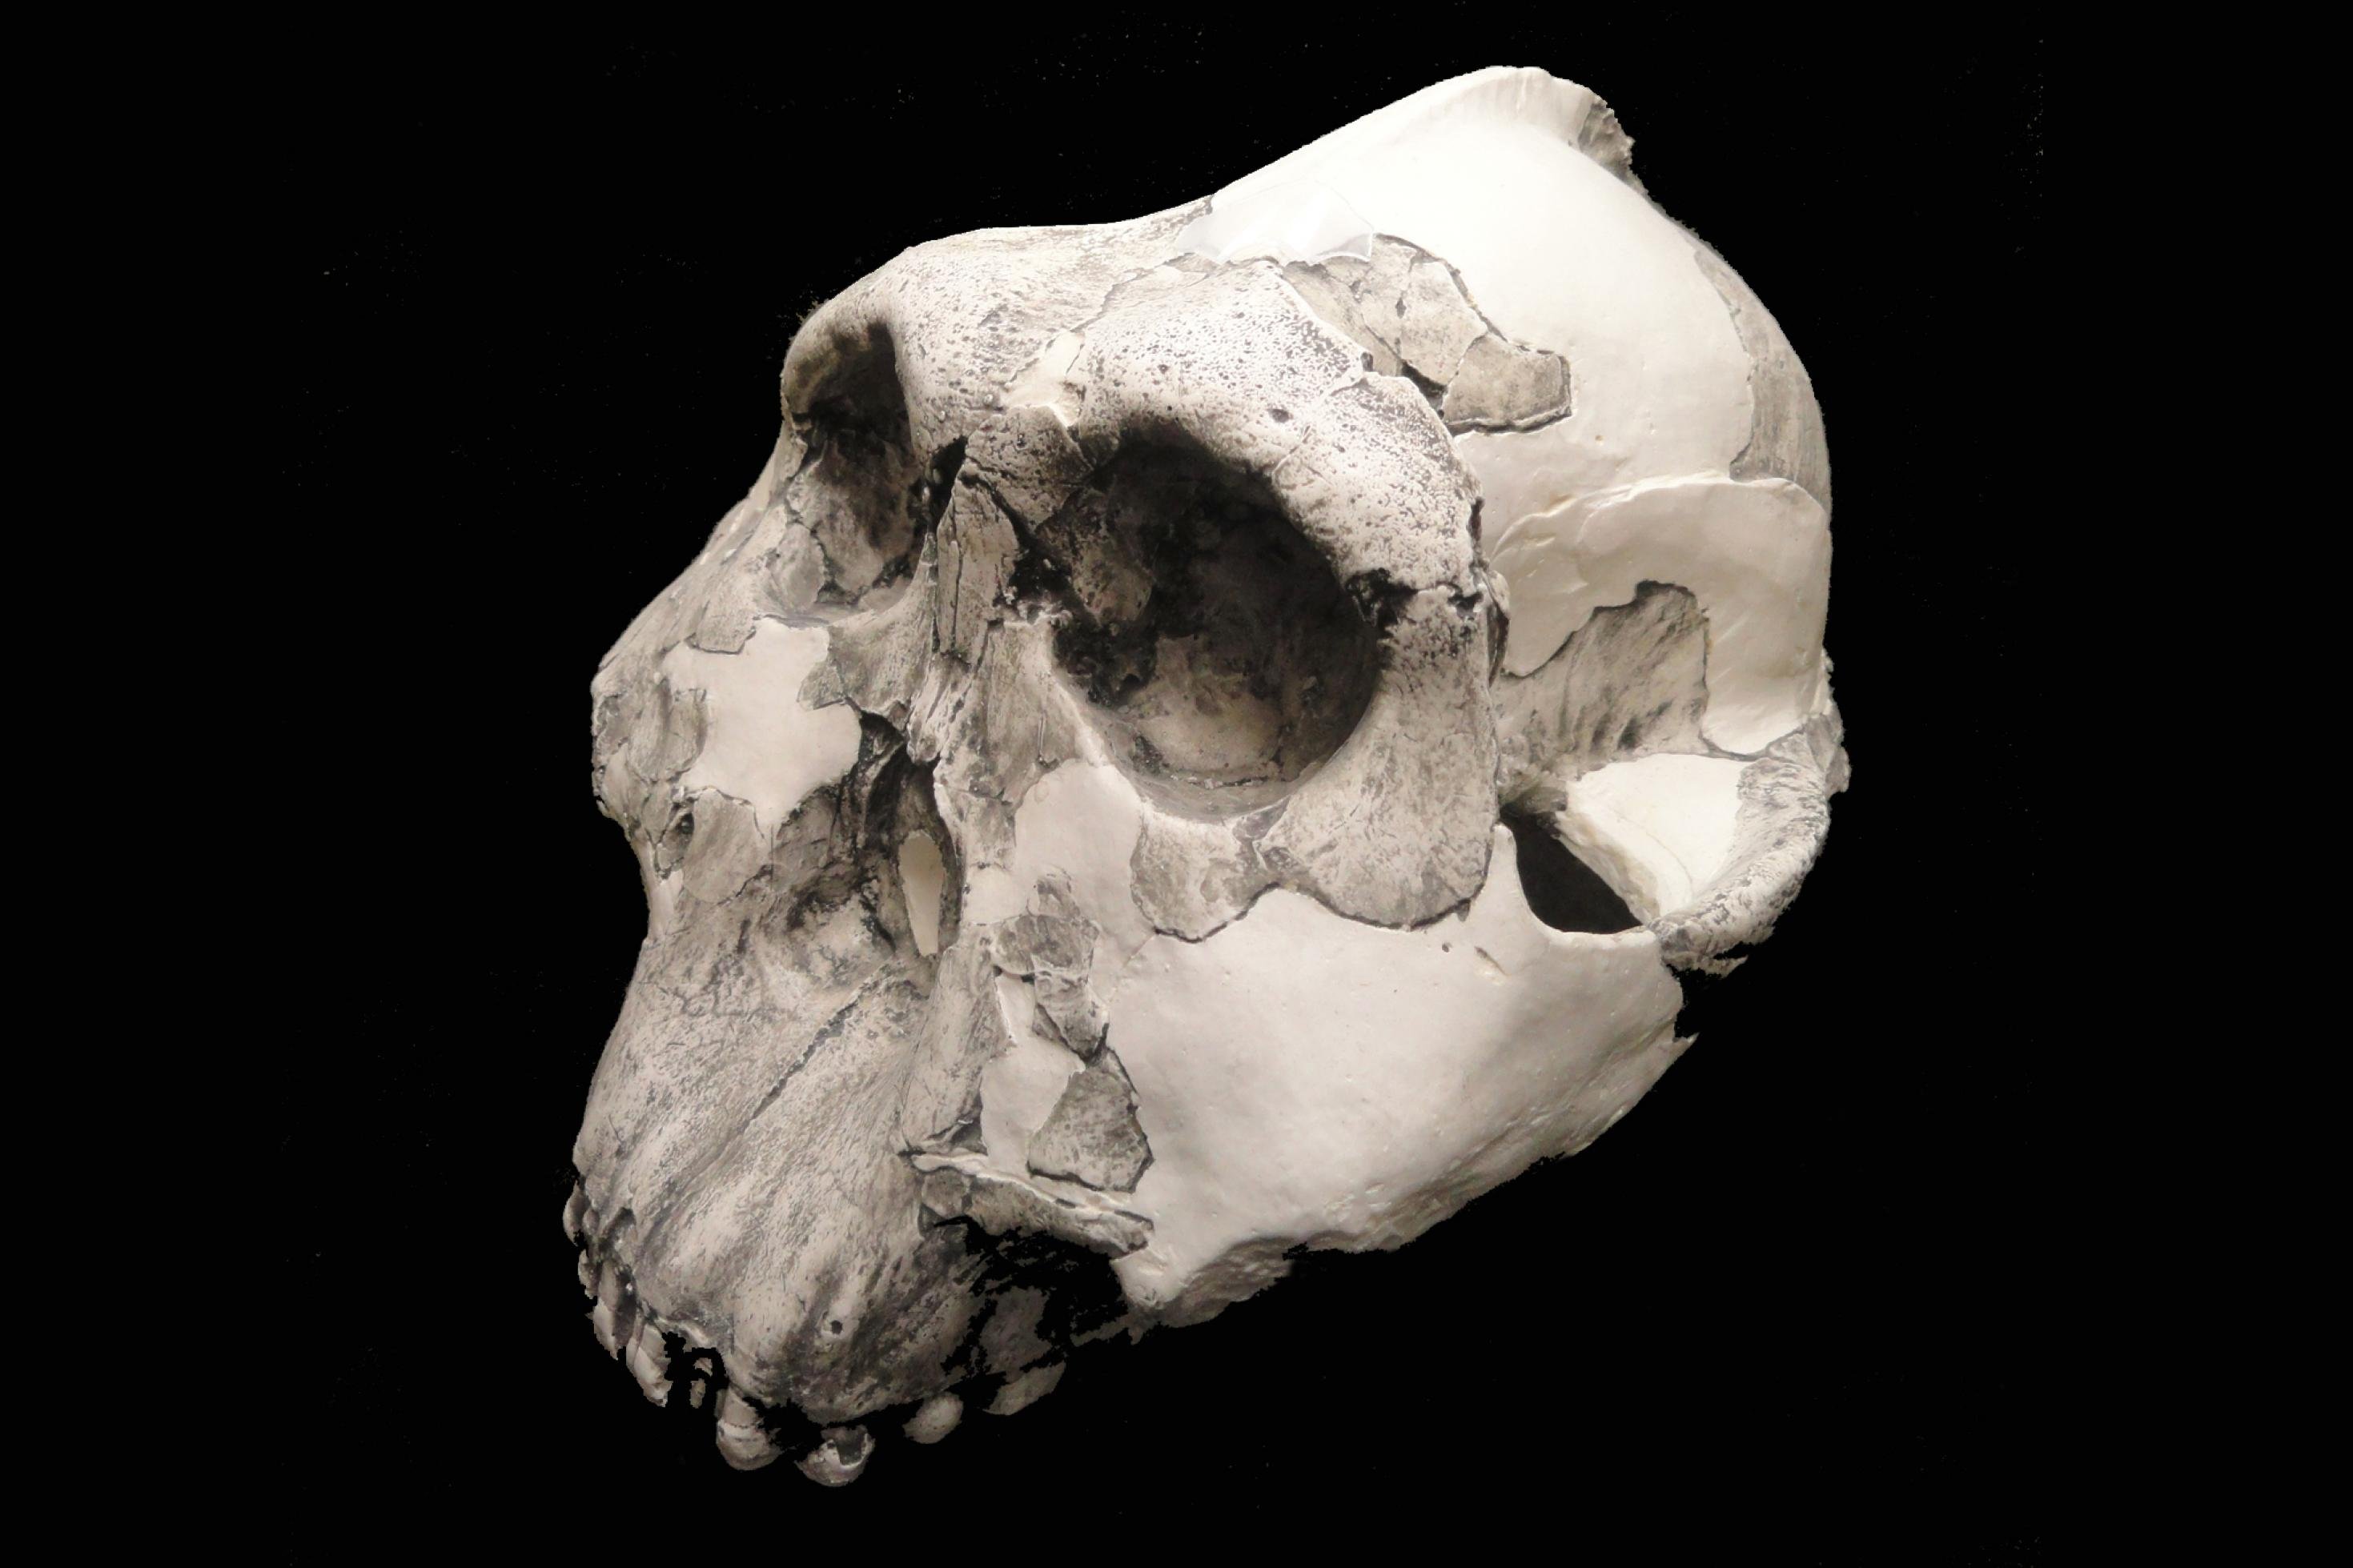 Gezeigt wird die seitliche Ansicht eines Schädels, der aus fossilen Bruchstücken (dunkelgrau) und ergänzten Teilen zusammengesetzt ist. Die Überaugenwülste sind sehr dick, der Oberkiefer riesig (der Unterkiefer fehlt) und die Gehirnkapsel klein. Oben auf dem Schädel, mehr nach hinten hin, ist eine Art Knochenkamm zu erkennen.